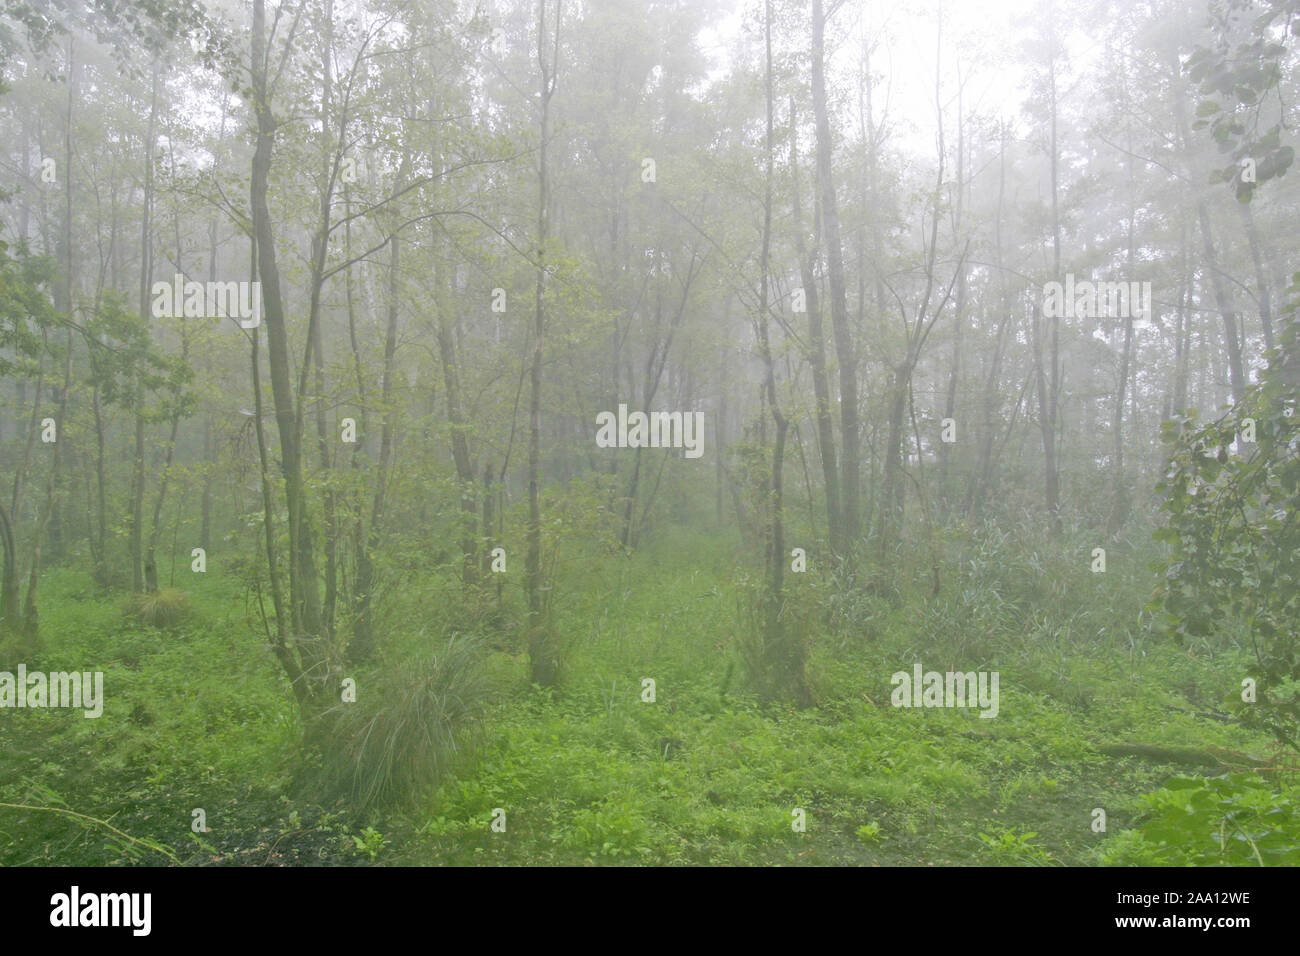 Bruchwald an einem regnerischen, nebligen Tag / Forest on a rainy, foggy day Stock Photo